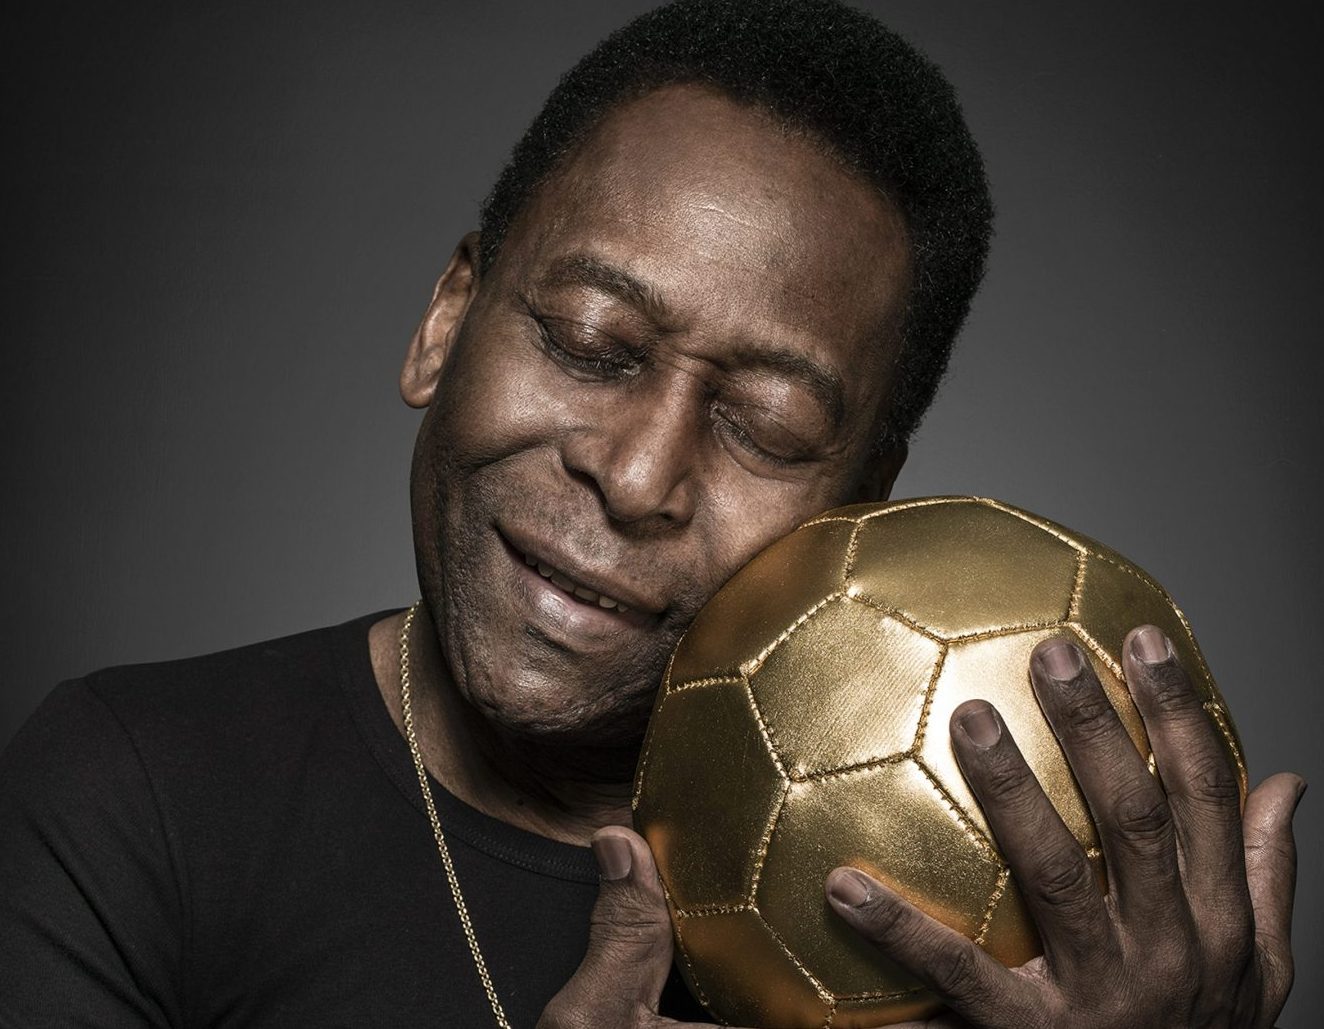 Mundo do futebol reverencia e parabeniza Pelé: “Incomparável”